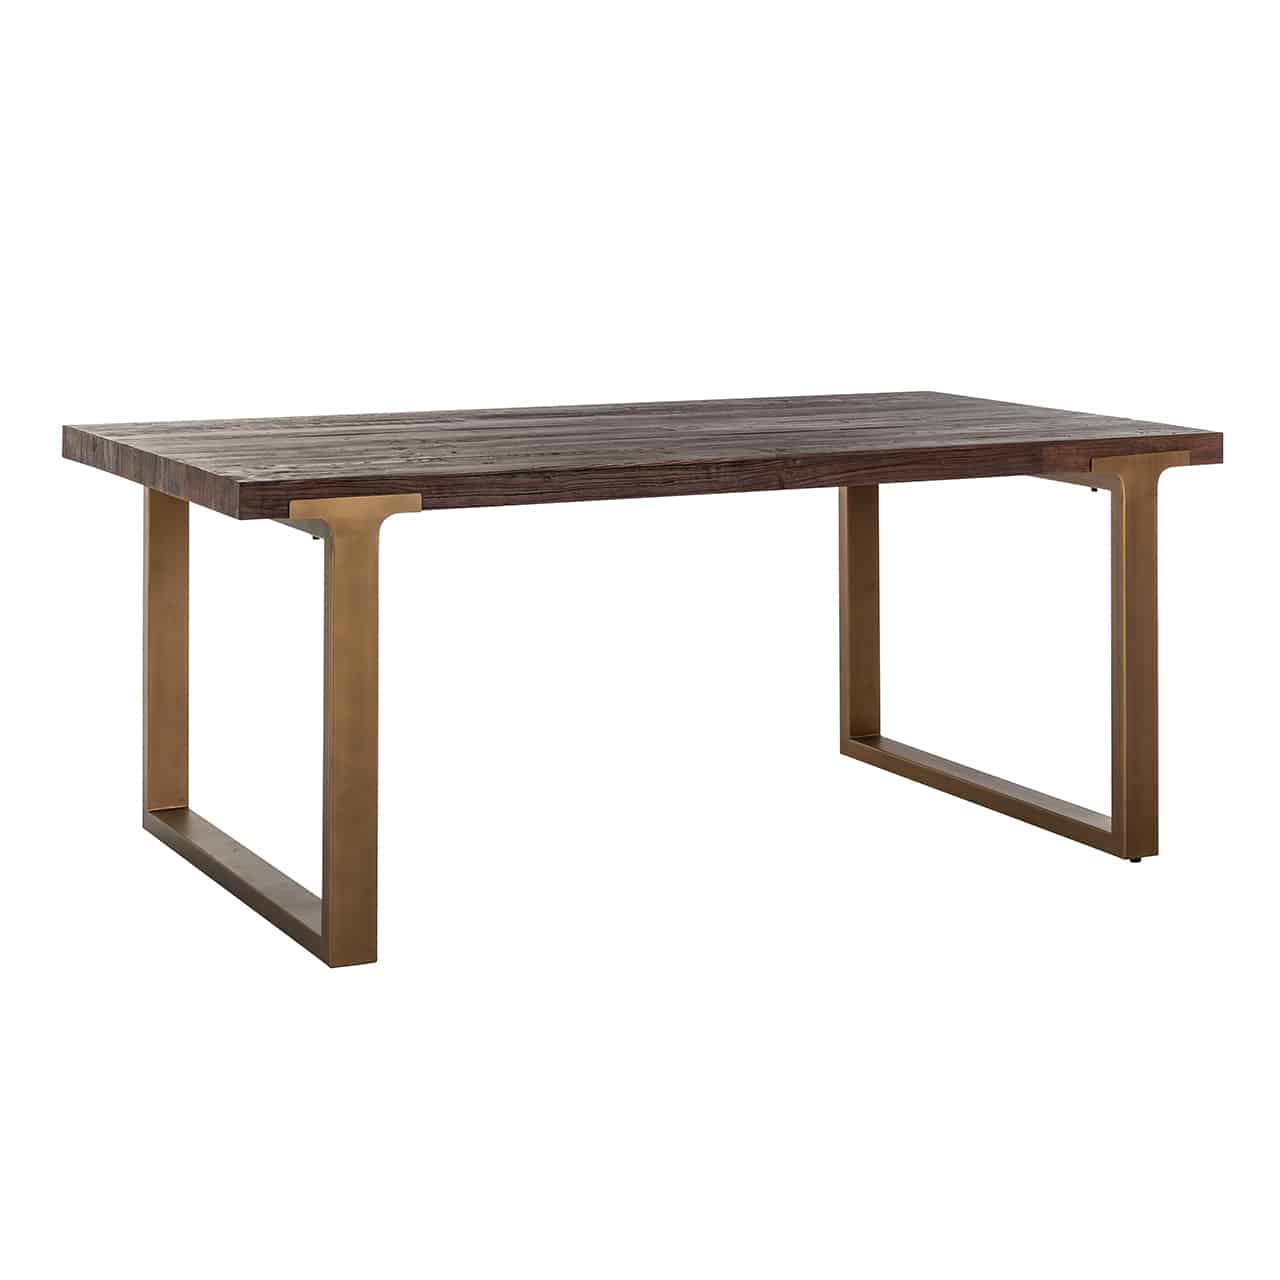 Esstisch, beidseitig mit breiten Kufen aus matt goldenem Edelstahl, darauf eine lange, rechteckige Tischplatte aus recyceltem Ulmenholz.